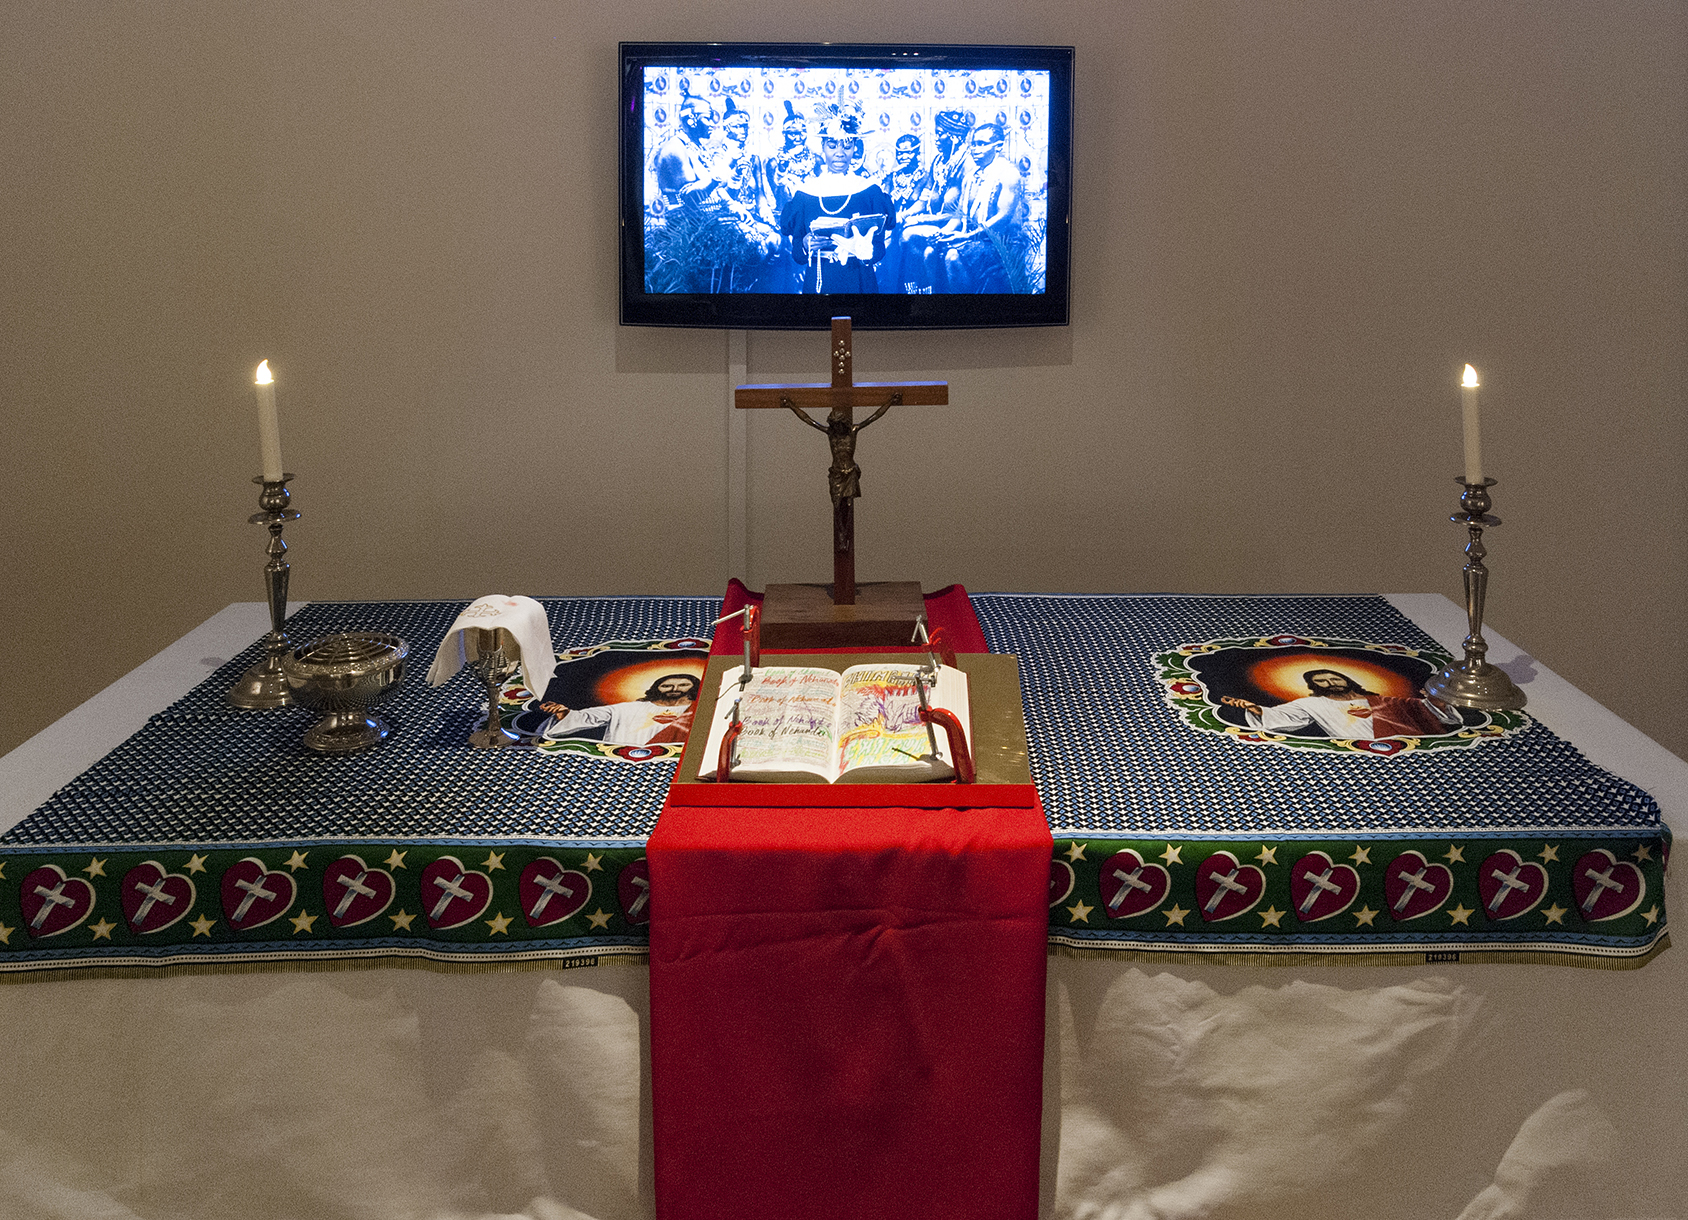 Altare med bibel och en tvskärm